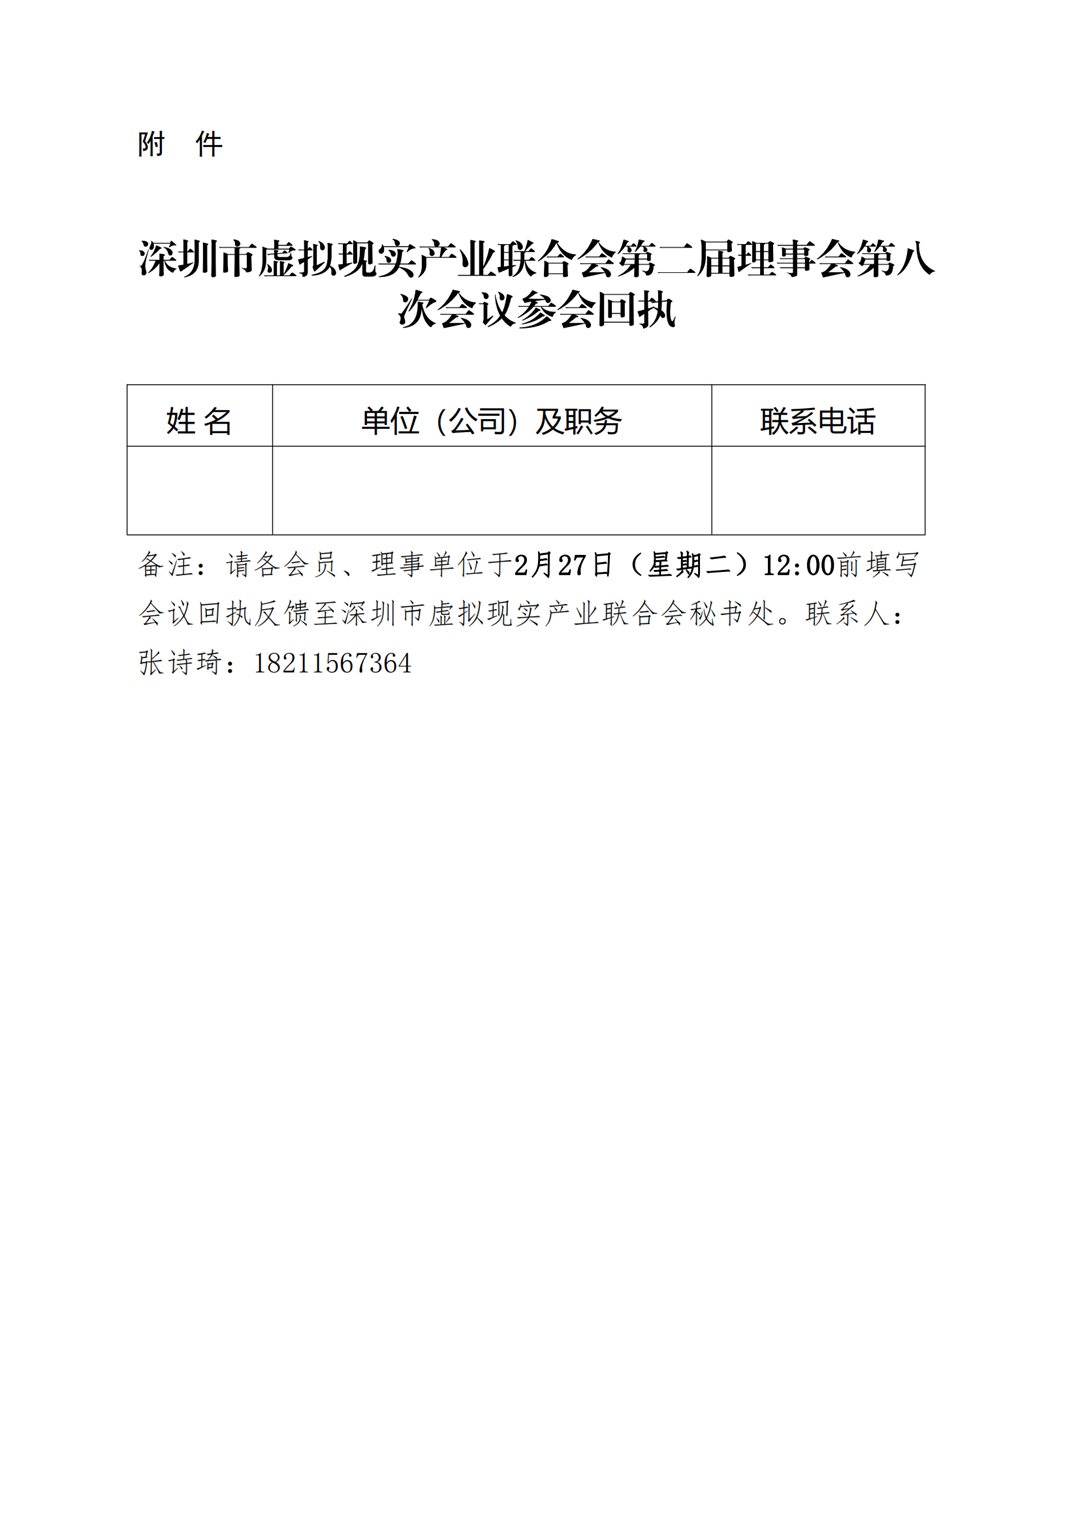 关于召开深圳市虚拟现实产业联合会第二届理事会第八次会议的通知_20240223165326_02.png